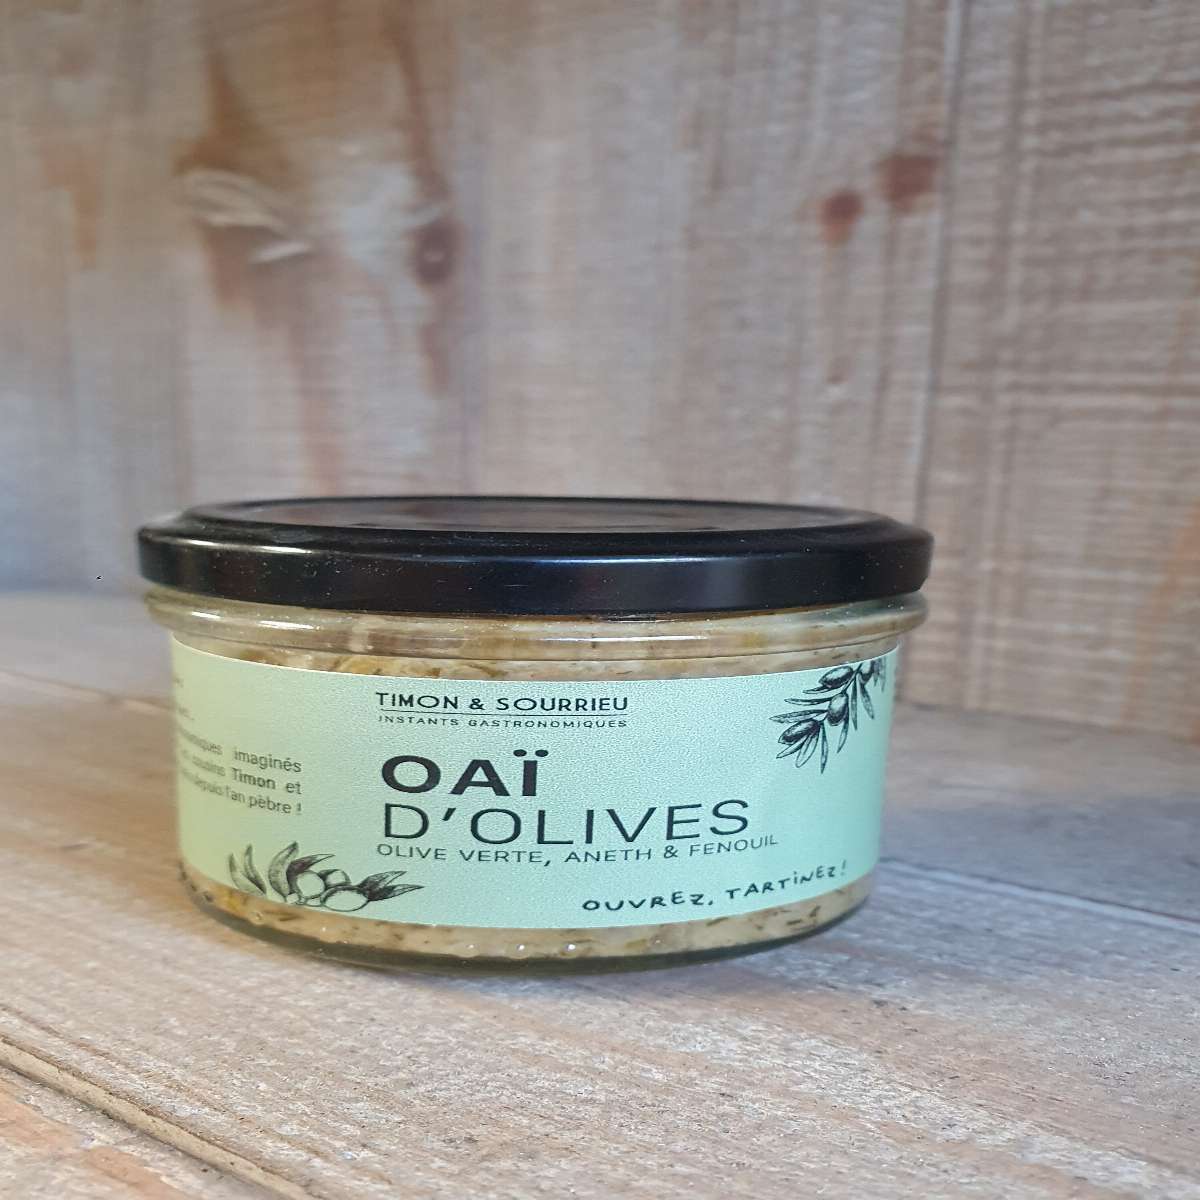 Oaï d'olives verte, aneth et fenouil.